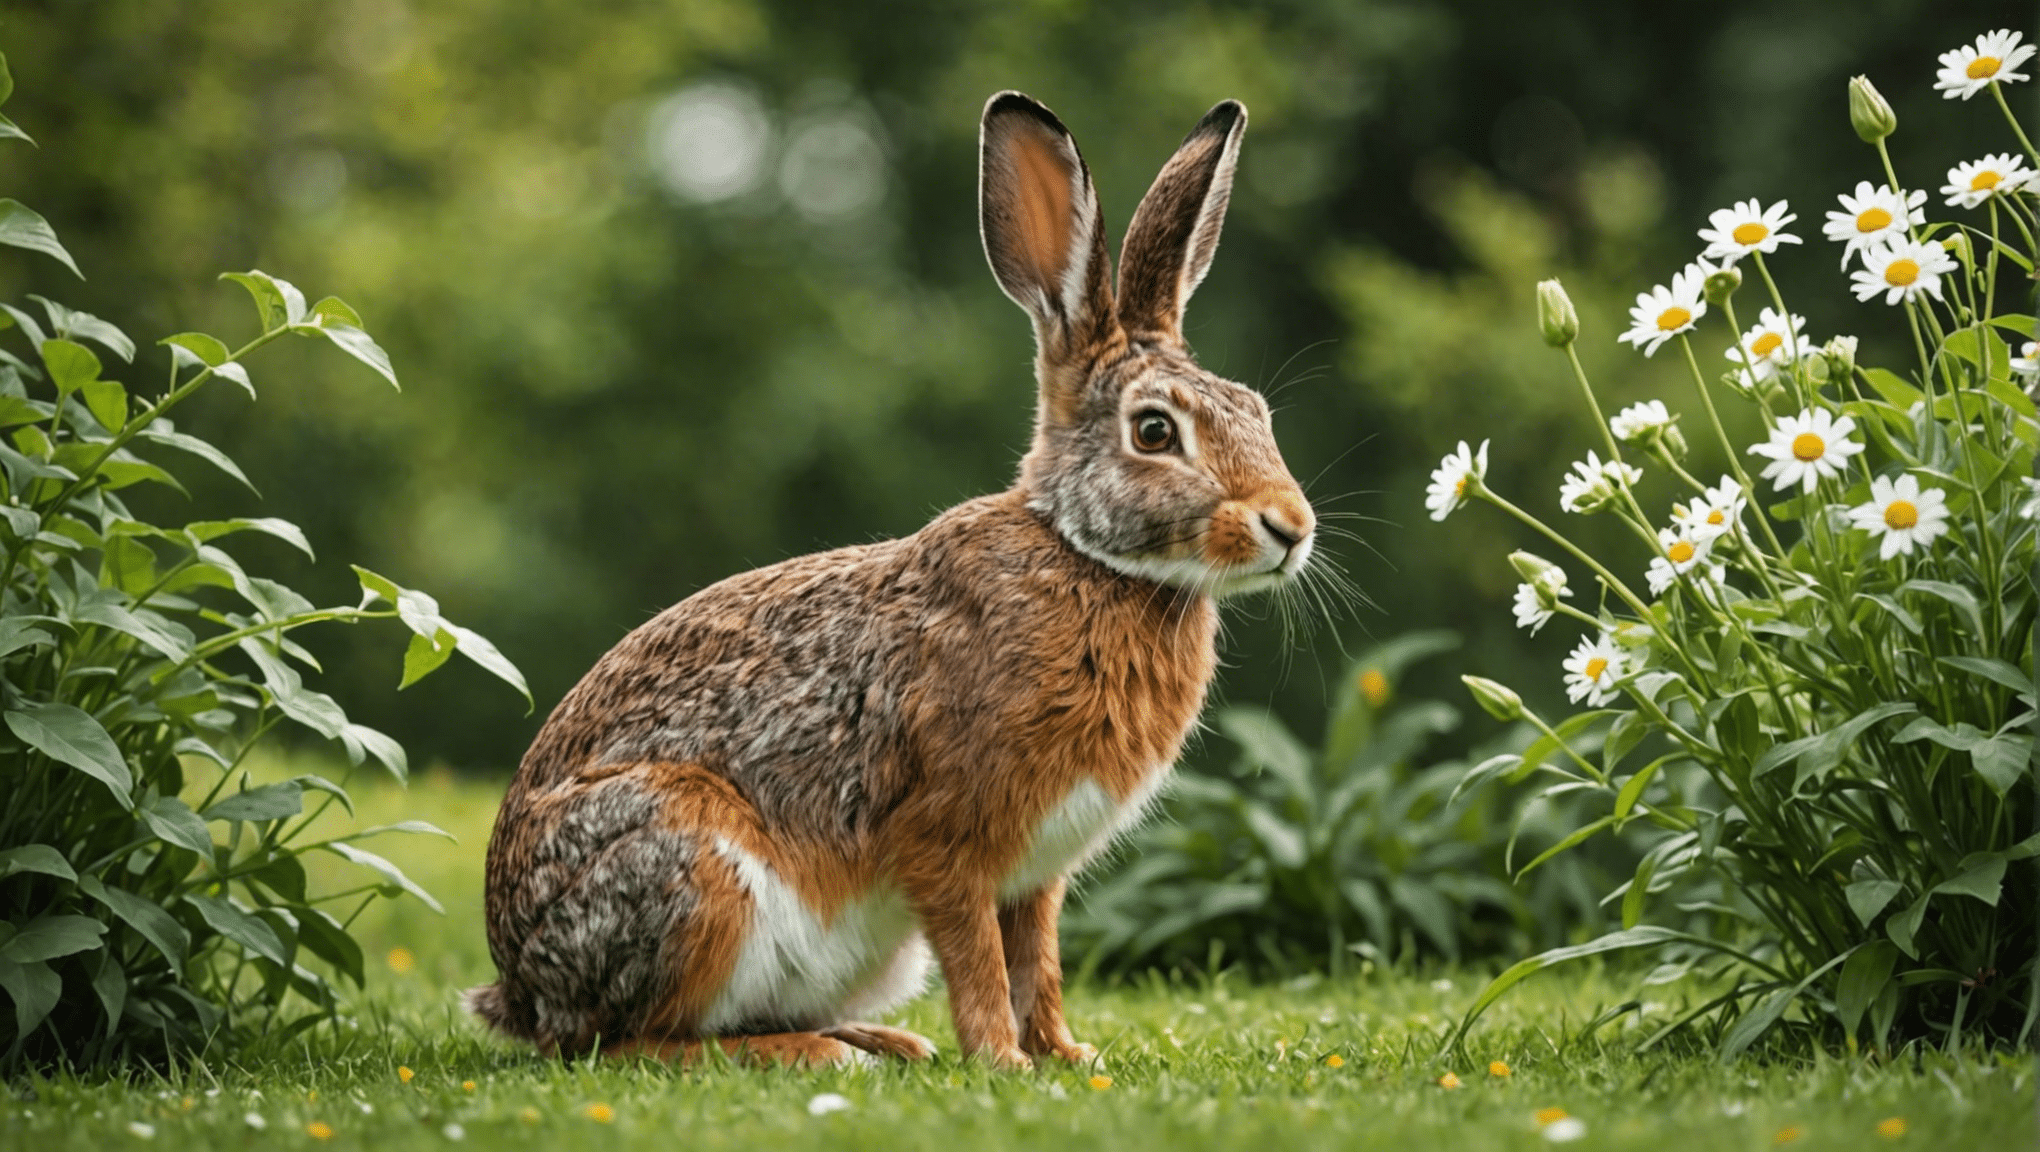 Entdecken Sie die Unterschiede zwischen Hasen und Kaninchen bei dieser aufschlussreichen Erkundung ihrer einzigartigen Eigenschaften und Verhaltensweisen.